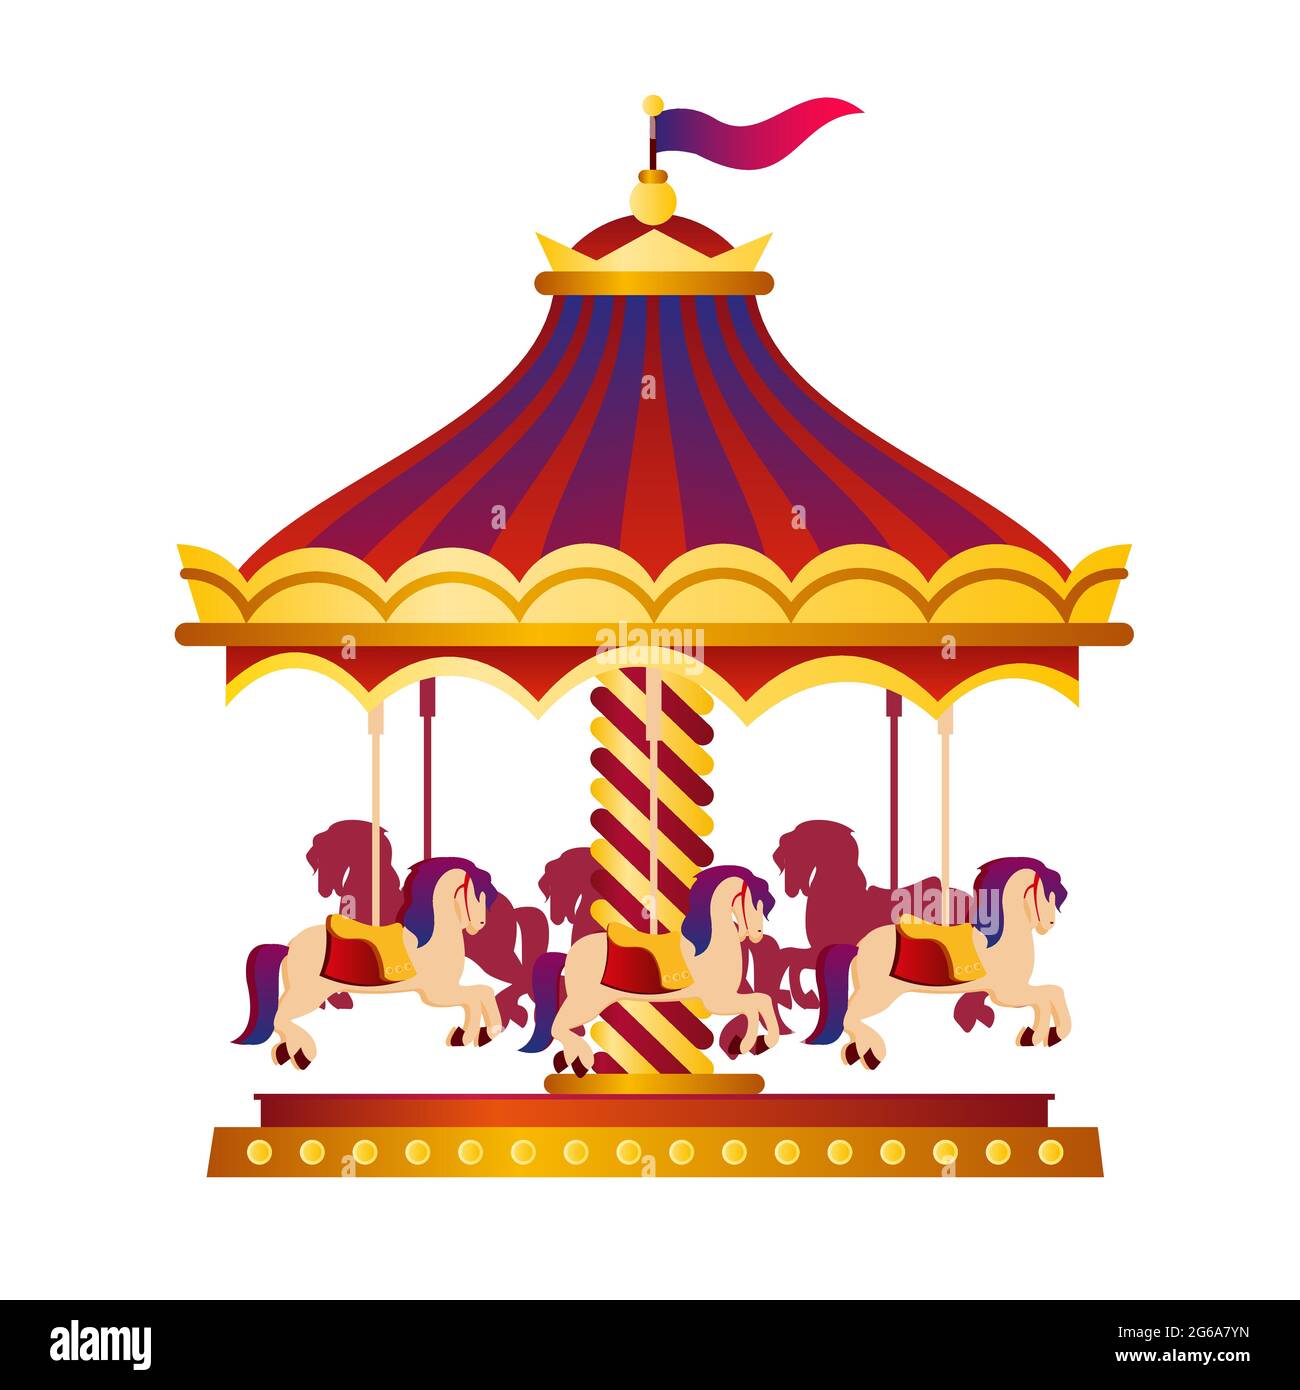 Vektor-Illustration von bunten und hellen Zirkus Karussell, Kreisverkehr mit Pferden, Zirkus-Konzept in Cartoon-Stil auf weißem Hintergrund. Stock Vektor